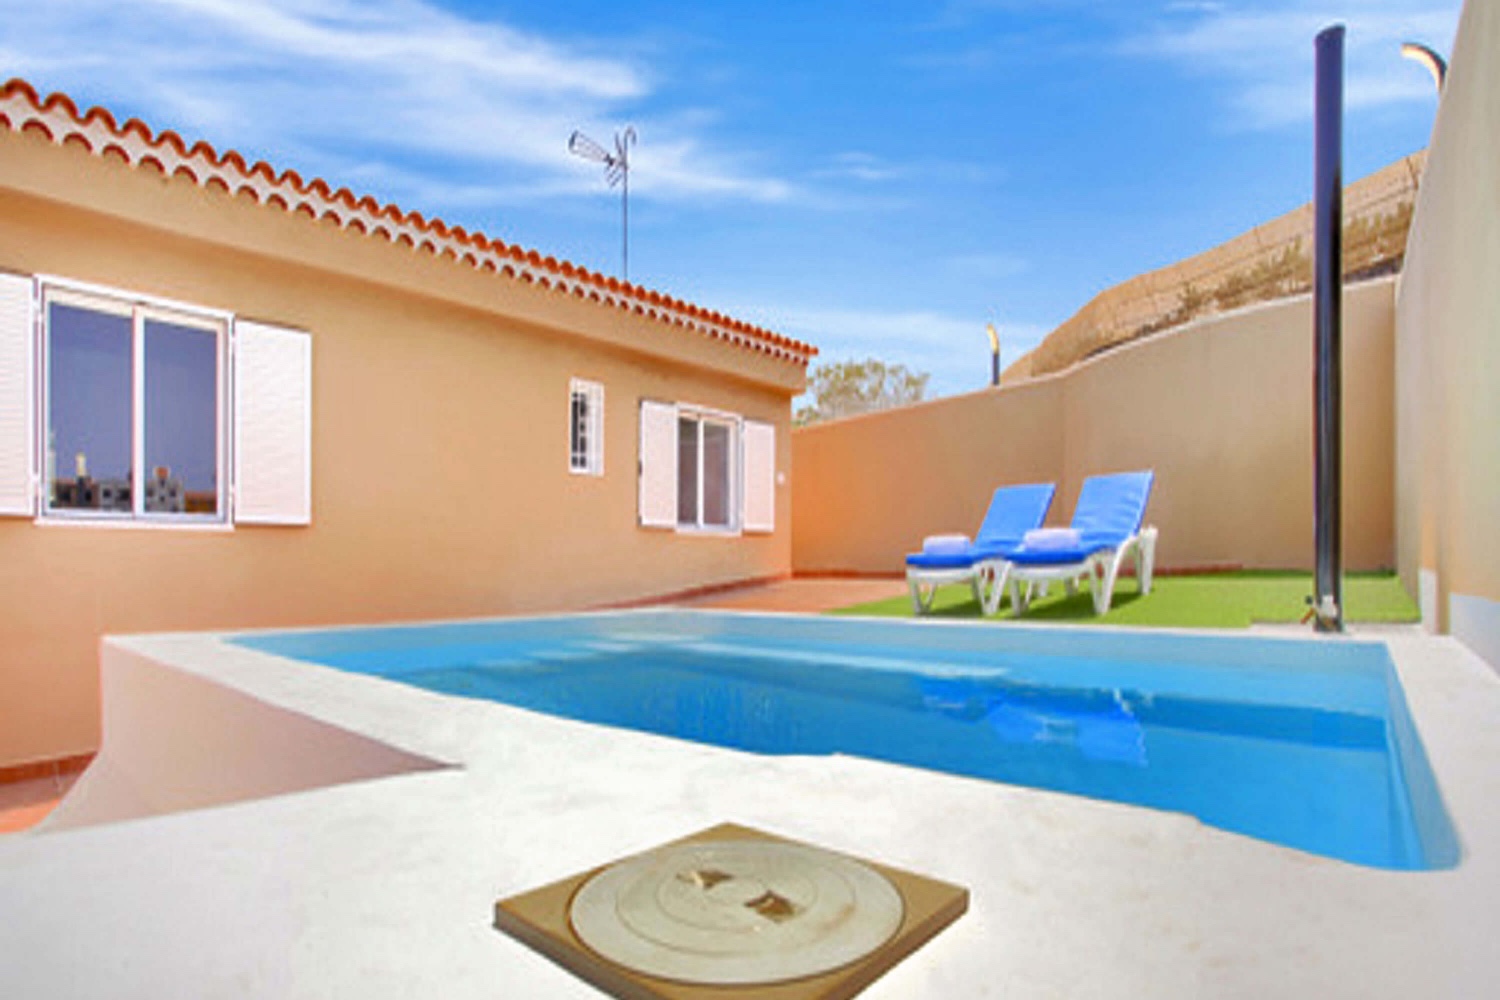 Mooi vrijstaand huis met privézwembad gelegen in Guía de Isora op slechts 1,5 km van het strand van San Juán